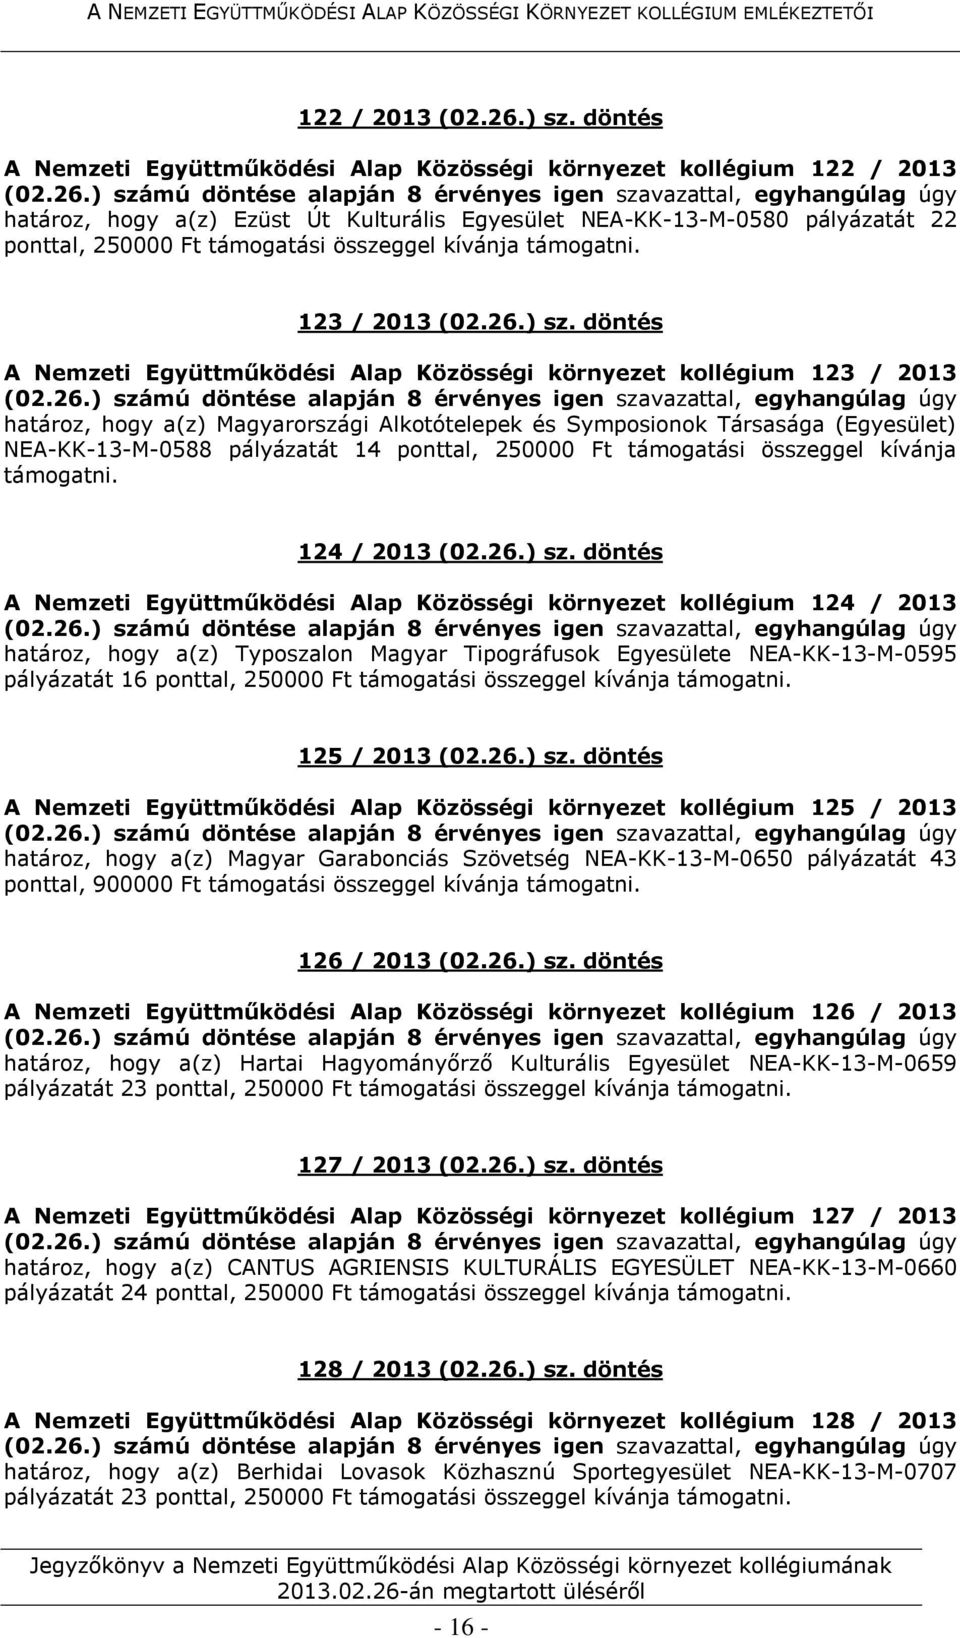 döntés A Nemzeti Együttműködési Alap Közösségi környezet kollégium 123 / 2013 határoz, hogy a(z) Magyarországi Alkotótelepek és Symposionok Társasága (Egyesület) NEA-KK-13-M-0588 pályázatát 14